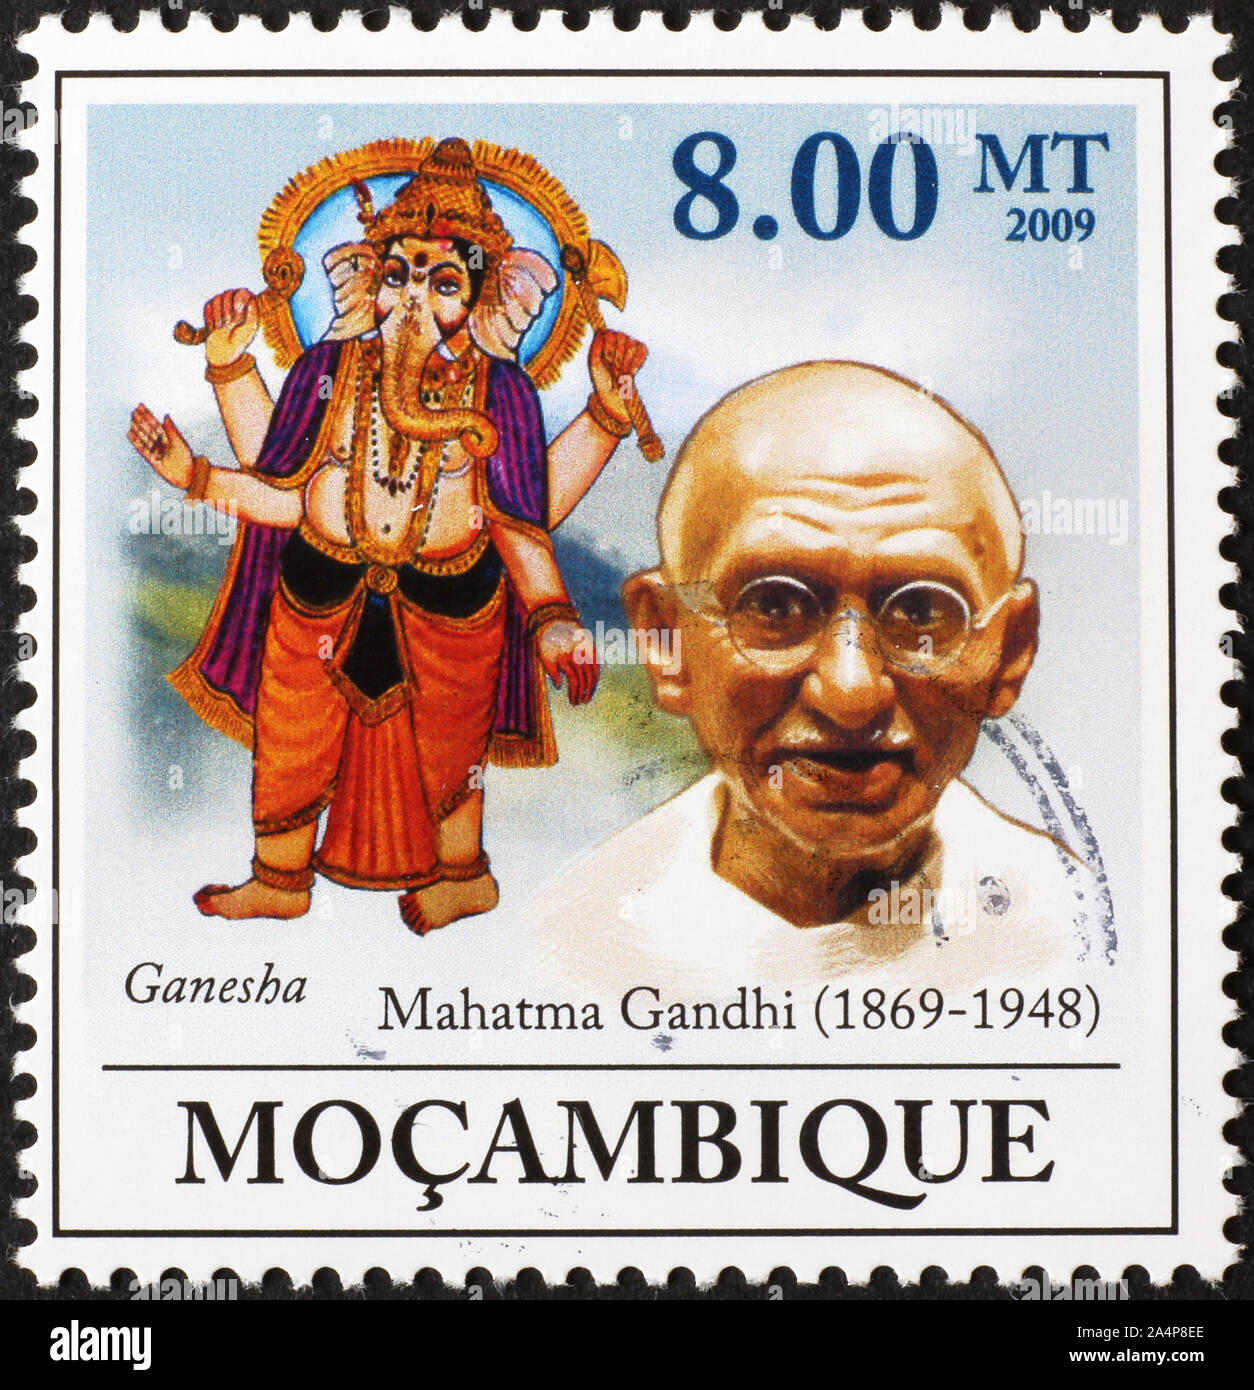 Mahatma Gandhi and god Ganesha on stamp of Mozambique Stock Photo